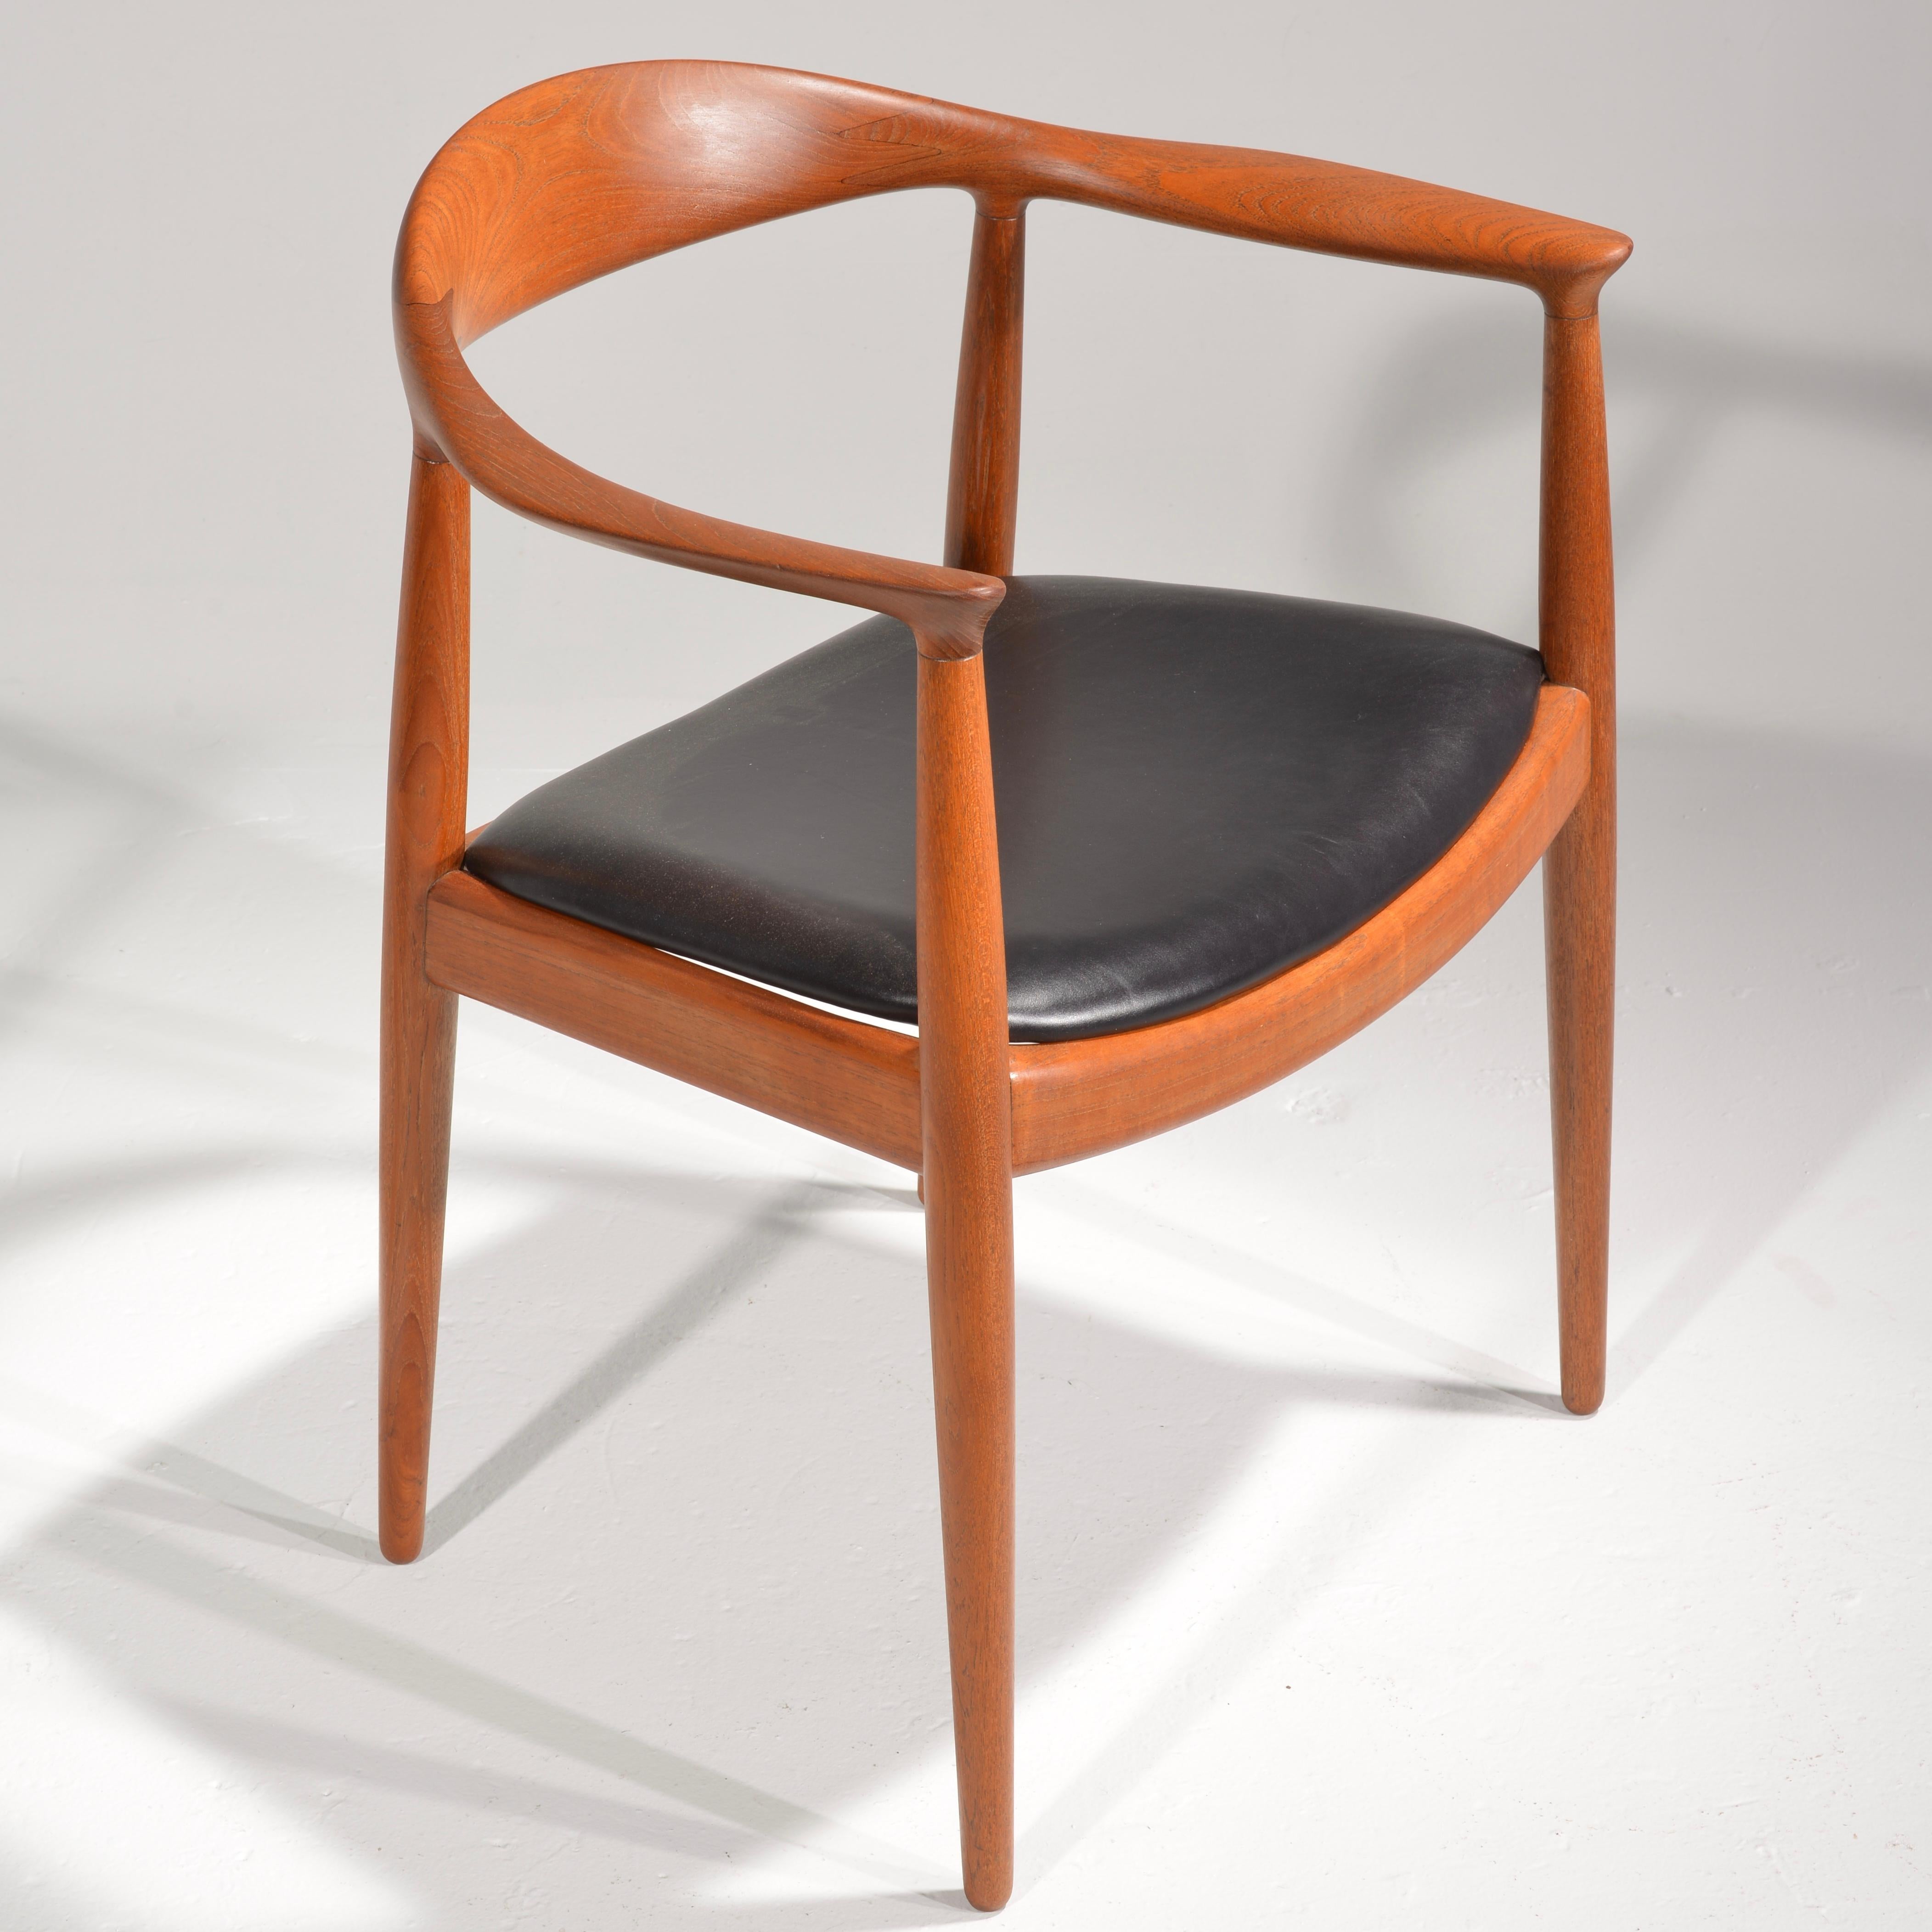 Nous sommes heureux d'offrir 4 chaises Hans Wegner JH-503 conçues en 1949 et produites par Johannes Hansen. Construction en teck massif d'origine entièrement restaurée. Estampillé de la marque du fabricant. Actuellement, nous en avons 10 tapissés en